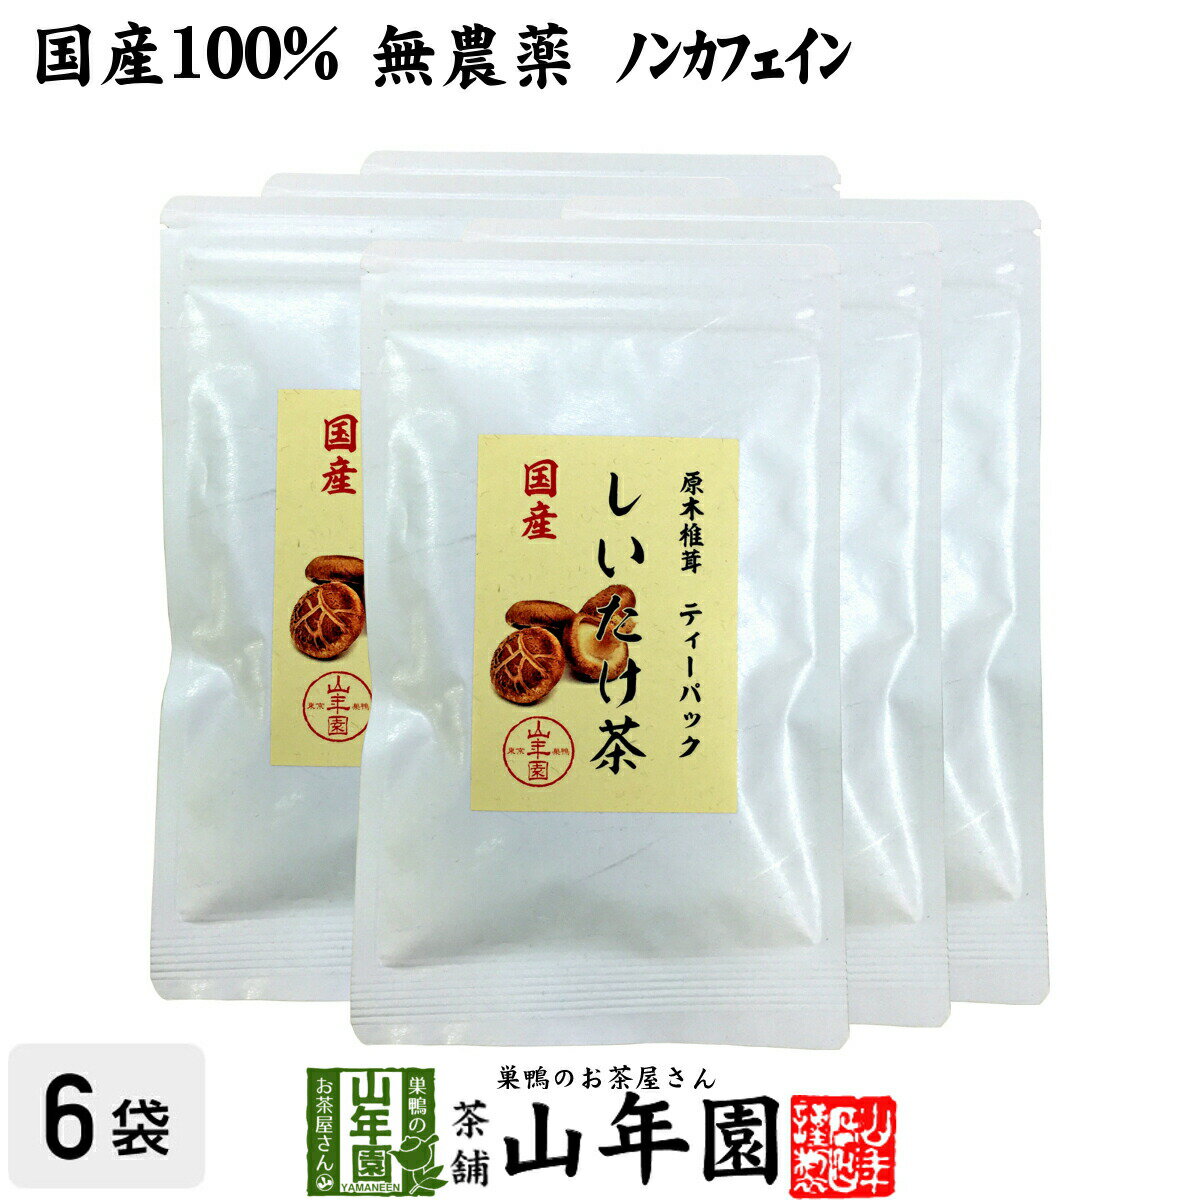 【国産100%】しいたけ茶 ティーパック 無農薬 3g×10